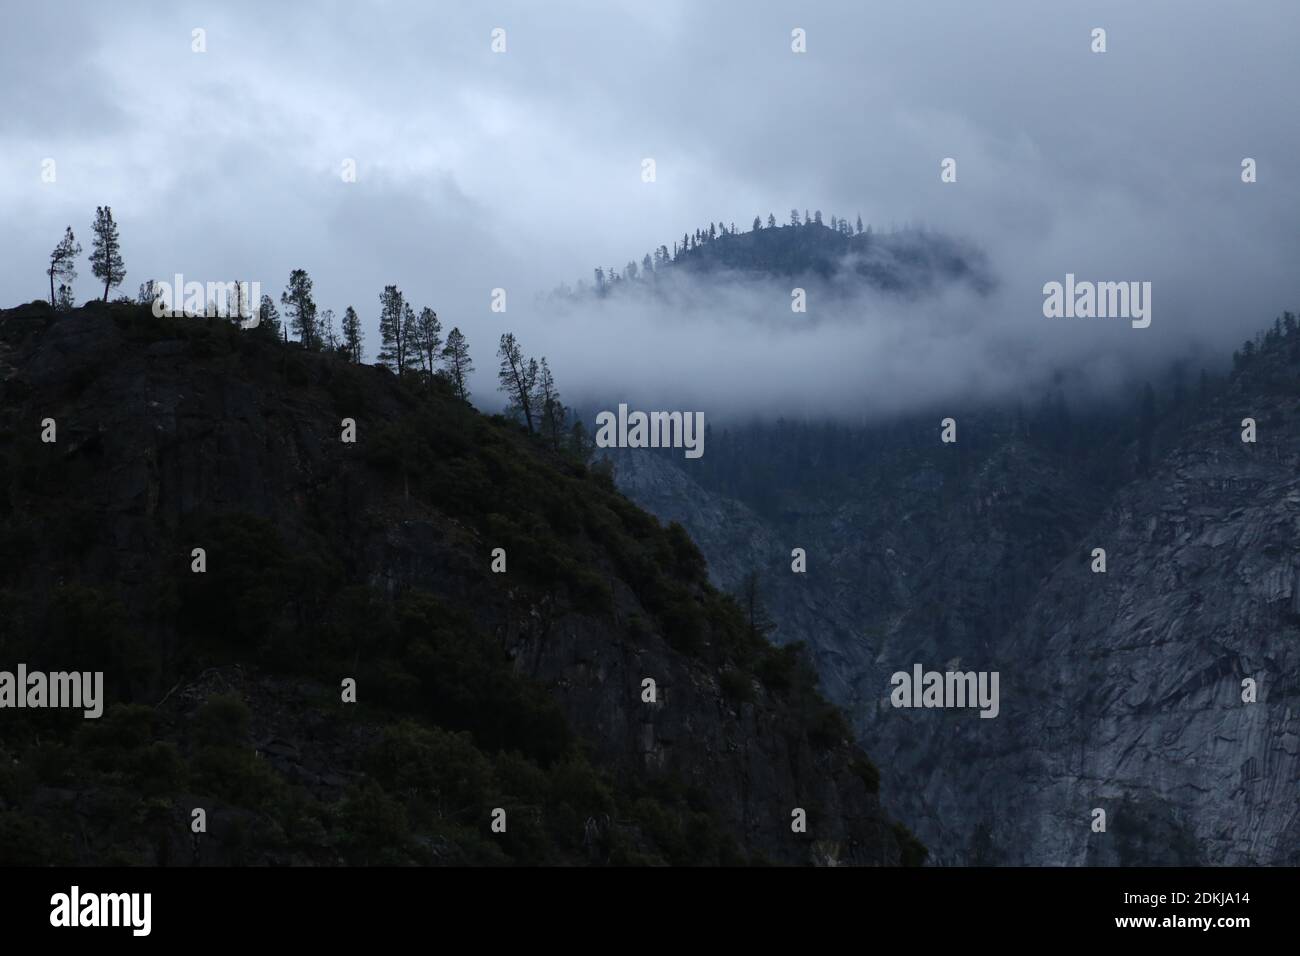 Des falaises de granit enveloppées de brouillard près du réservoir Hetch Hetchy Yosemite National part Banque D'Images